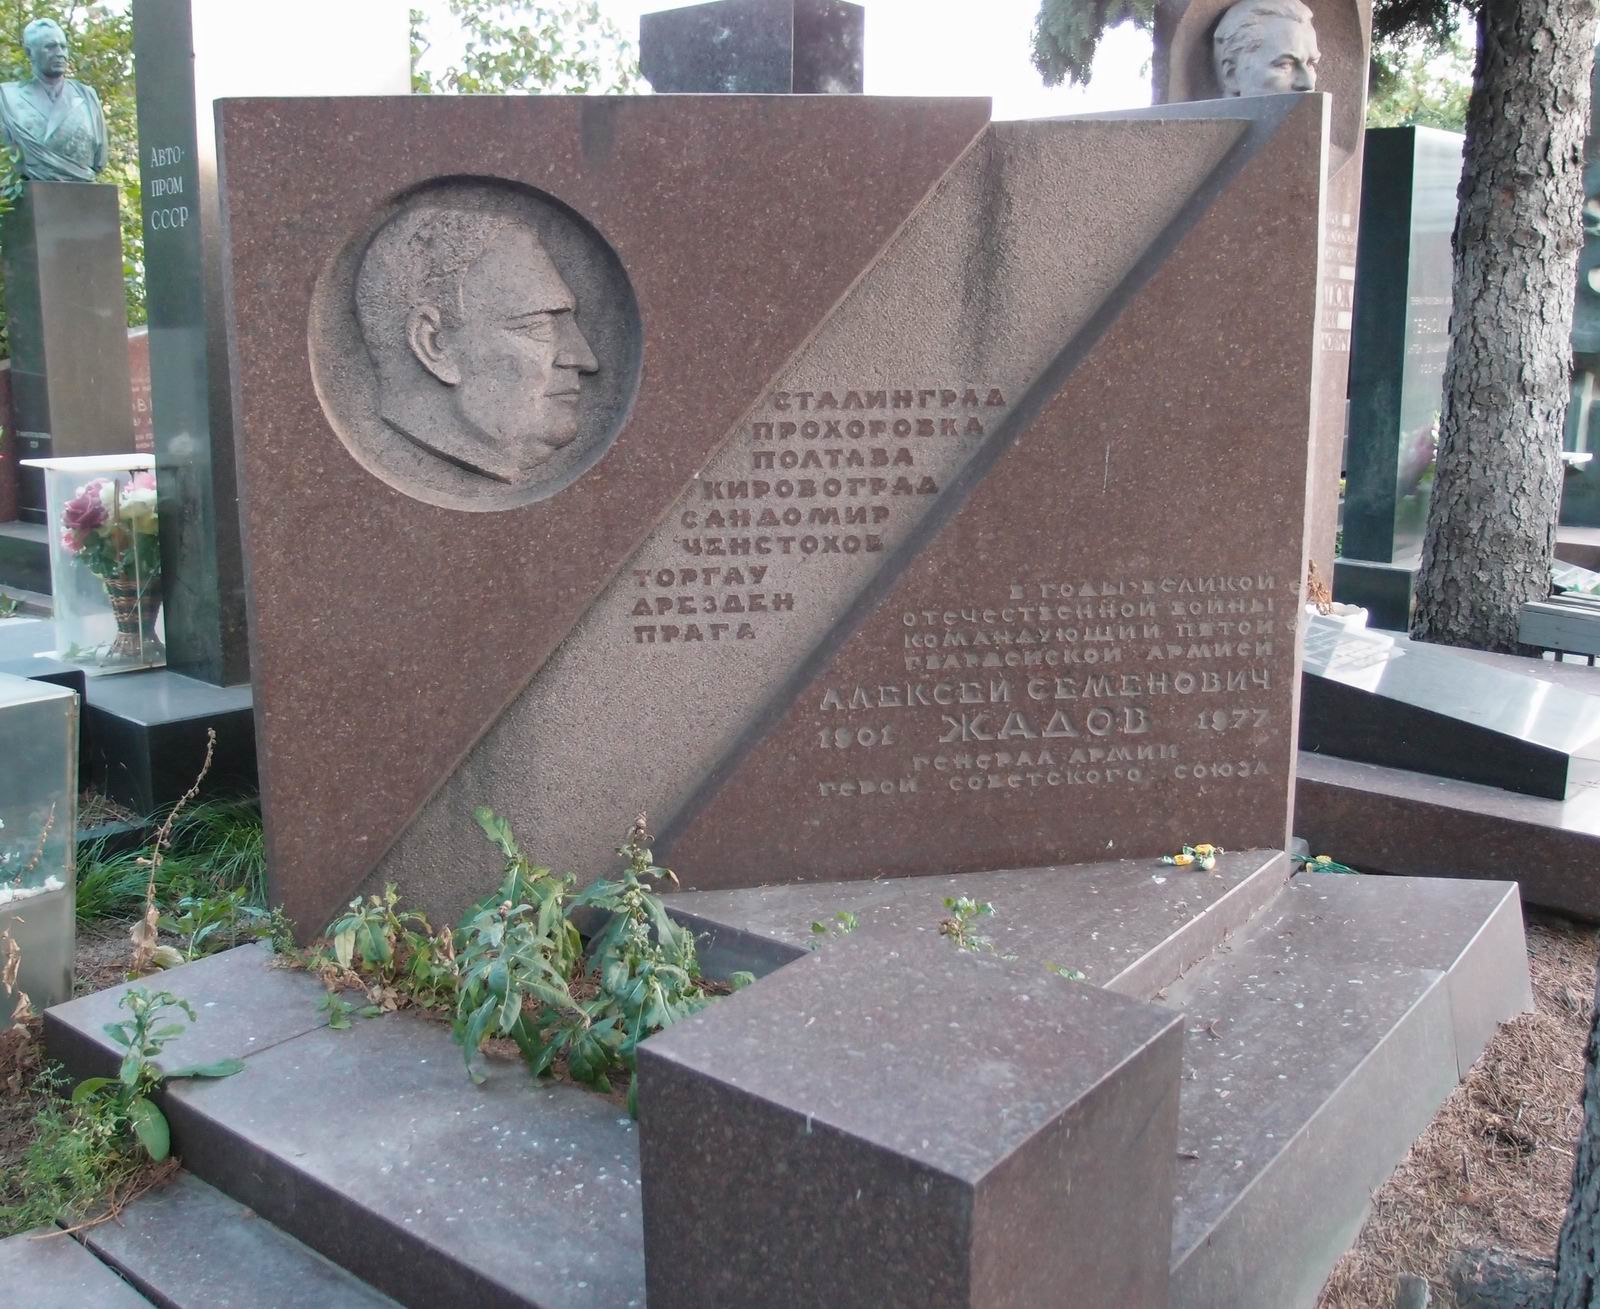 Памятник на могиле Жадова А.С. (1901-1977), ск. В.Тенета, арх. П.Андреев, на Новодевичьем кладбище (7-14-13).